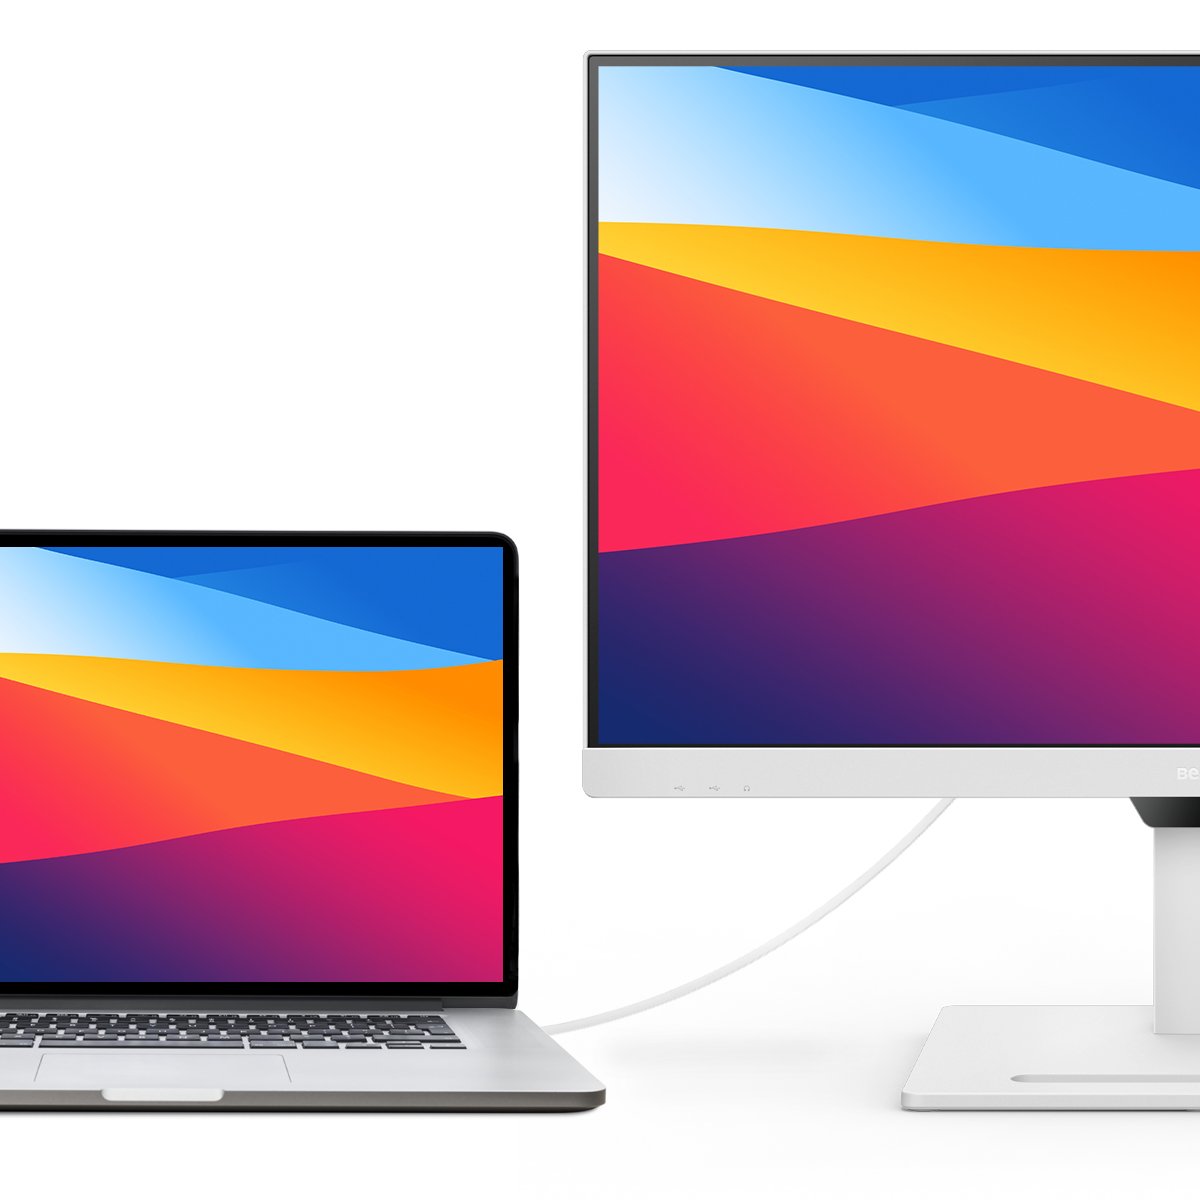 BenQ Režim M-Book Určen k minimalizaci vizuálních rozdílů mezi monitorem a připojeným produktem řady MacBook.